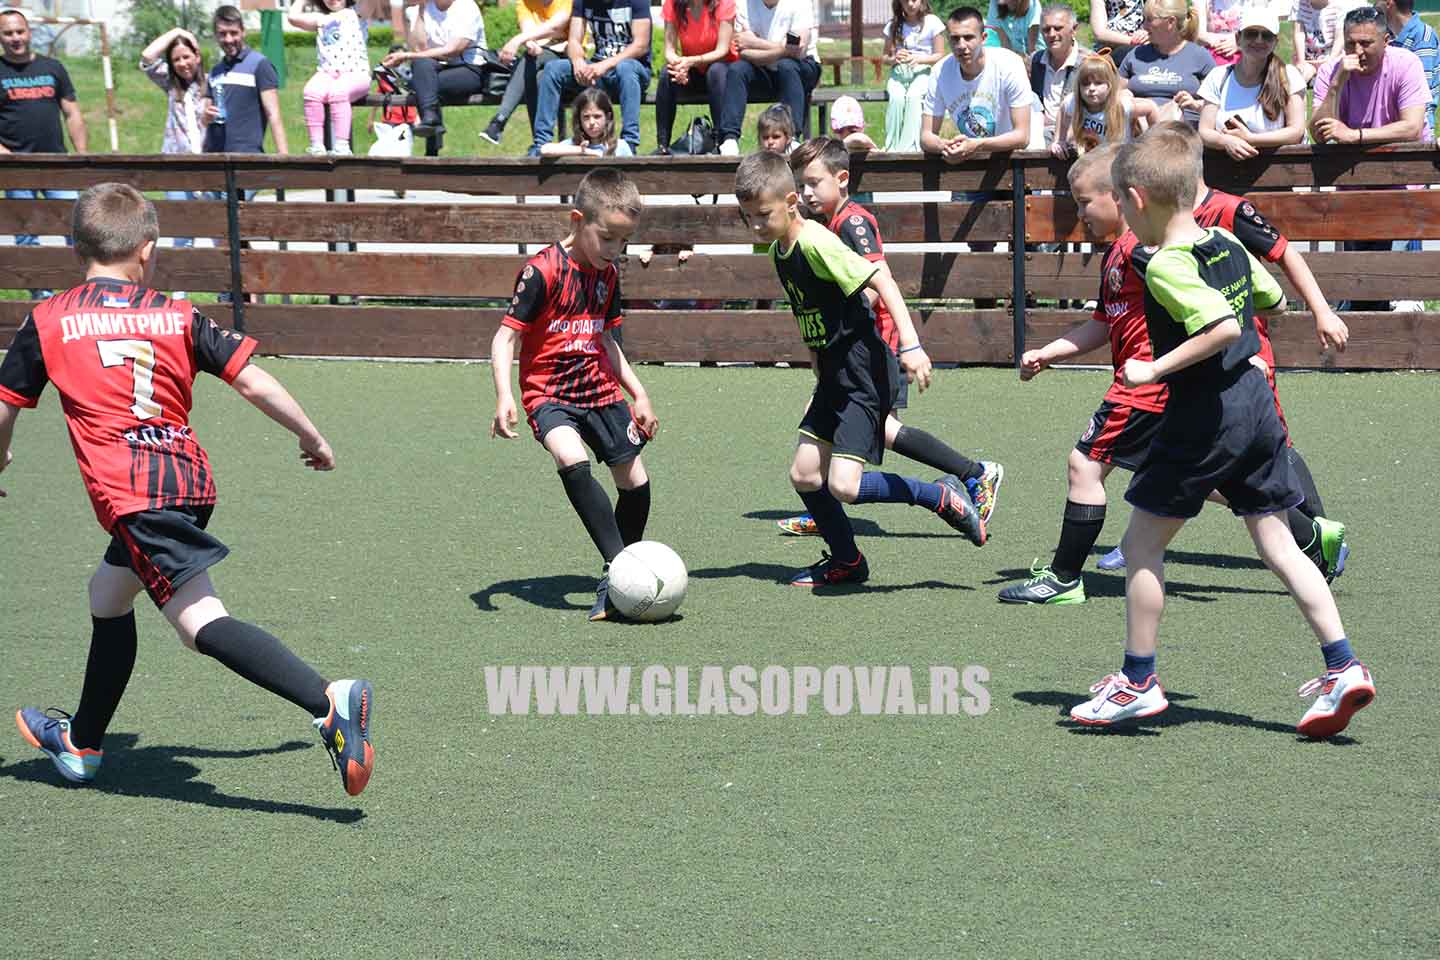 Škola fudbala Spartanac: Održan turnir „Fudbalom do radosti“ (video)